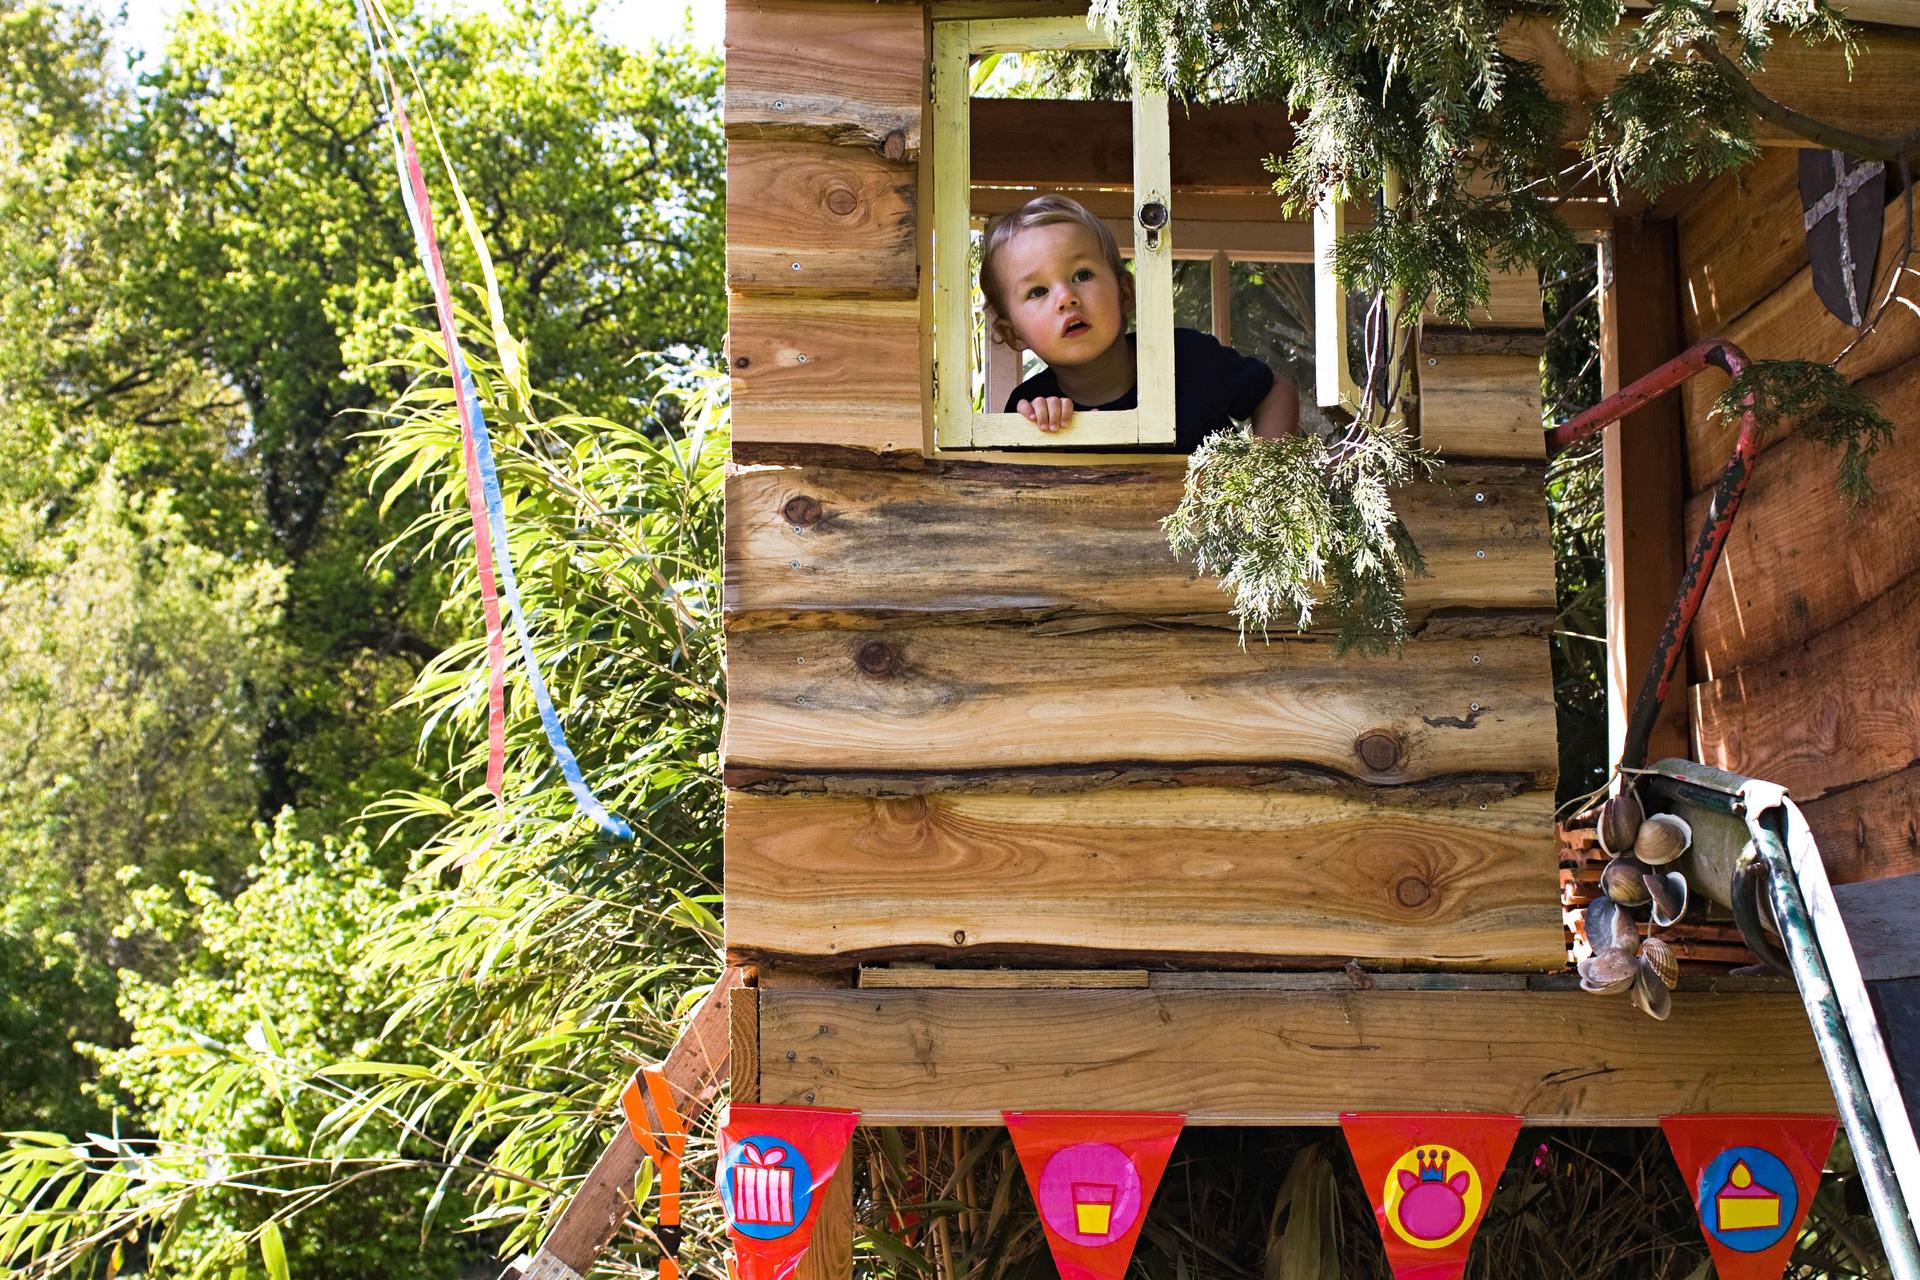 Ein Kleinkind blickt aus dem Fenster eines Baumhauses.